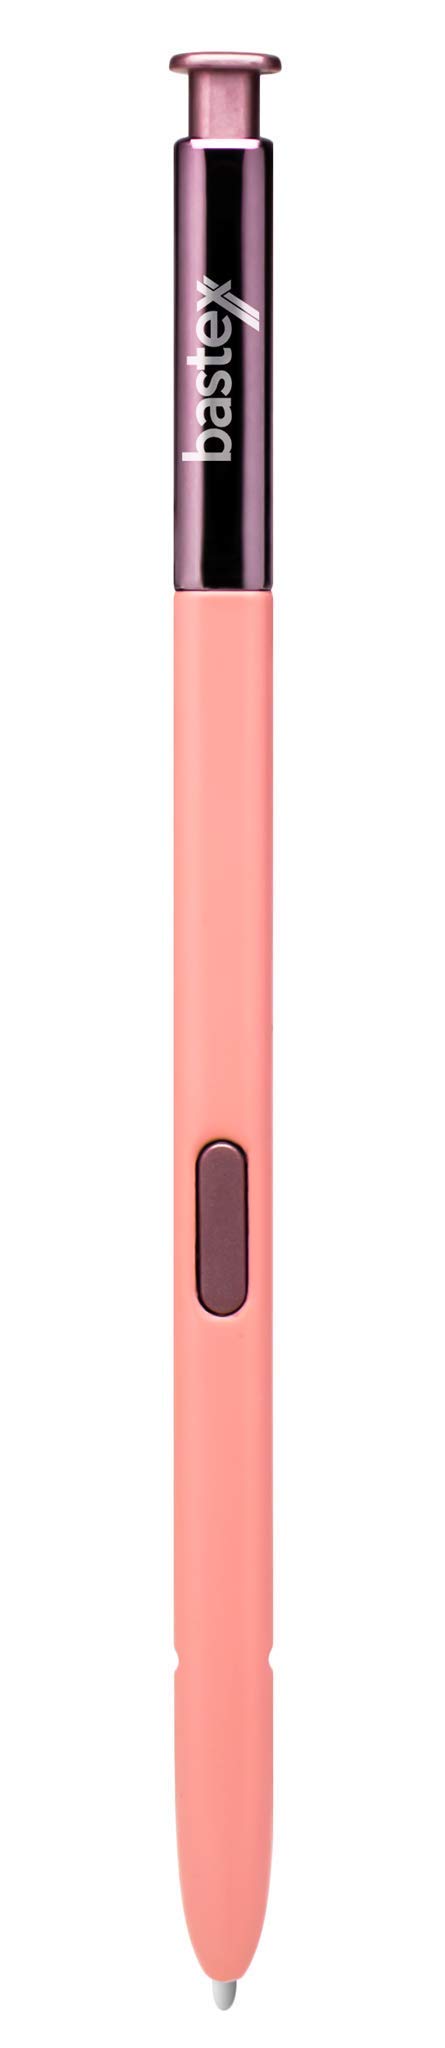 [Australia - AusPower] - Bastex - Touch Stylus S Pen for Samsung Galaxy Note 8 (Pink) 